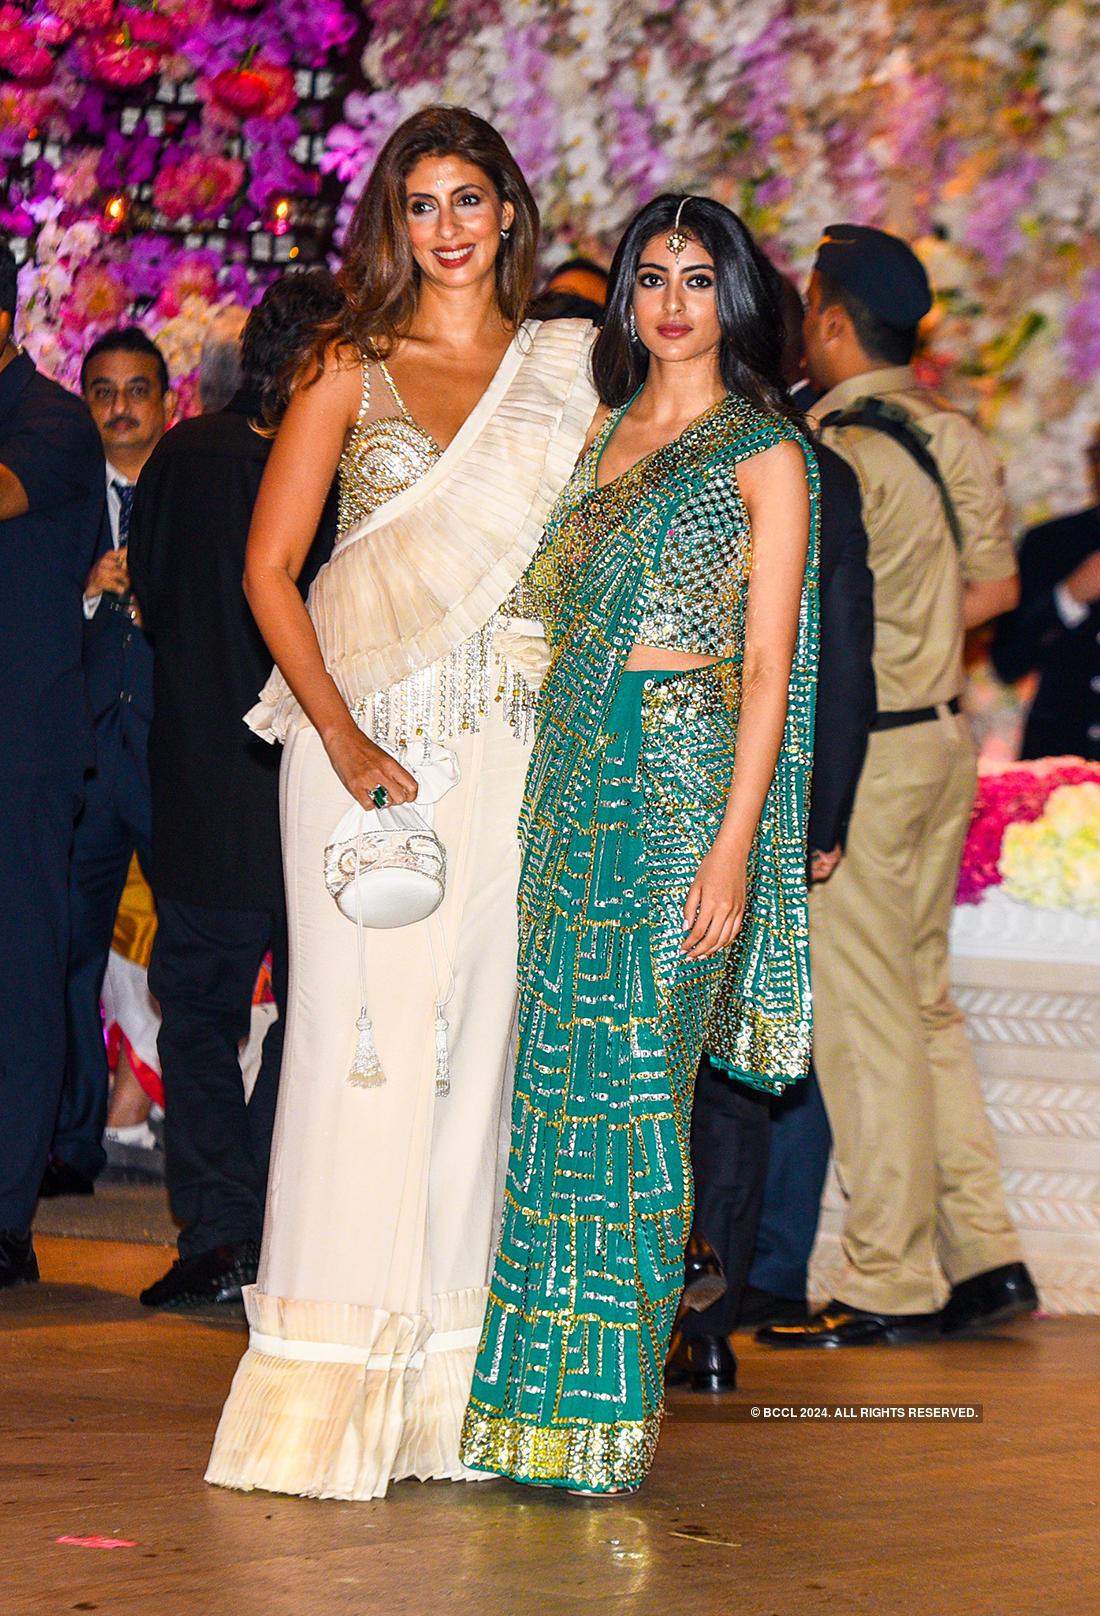 Best photos of Akash Ambani and Shloka Mehta's engagement celebrations